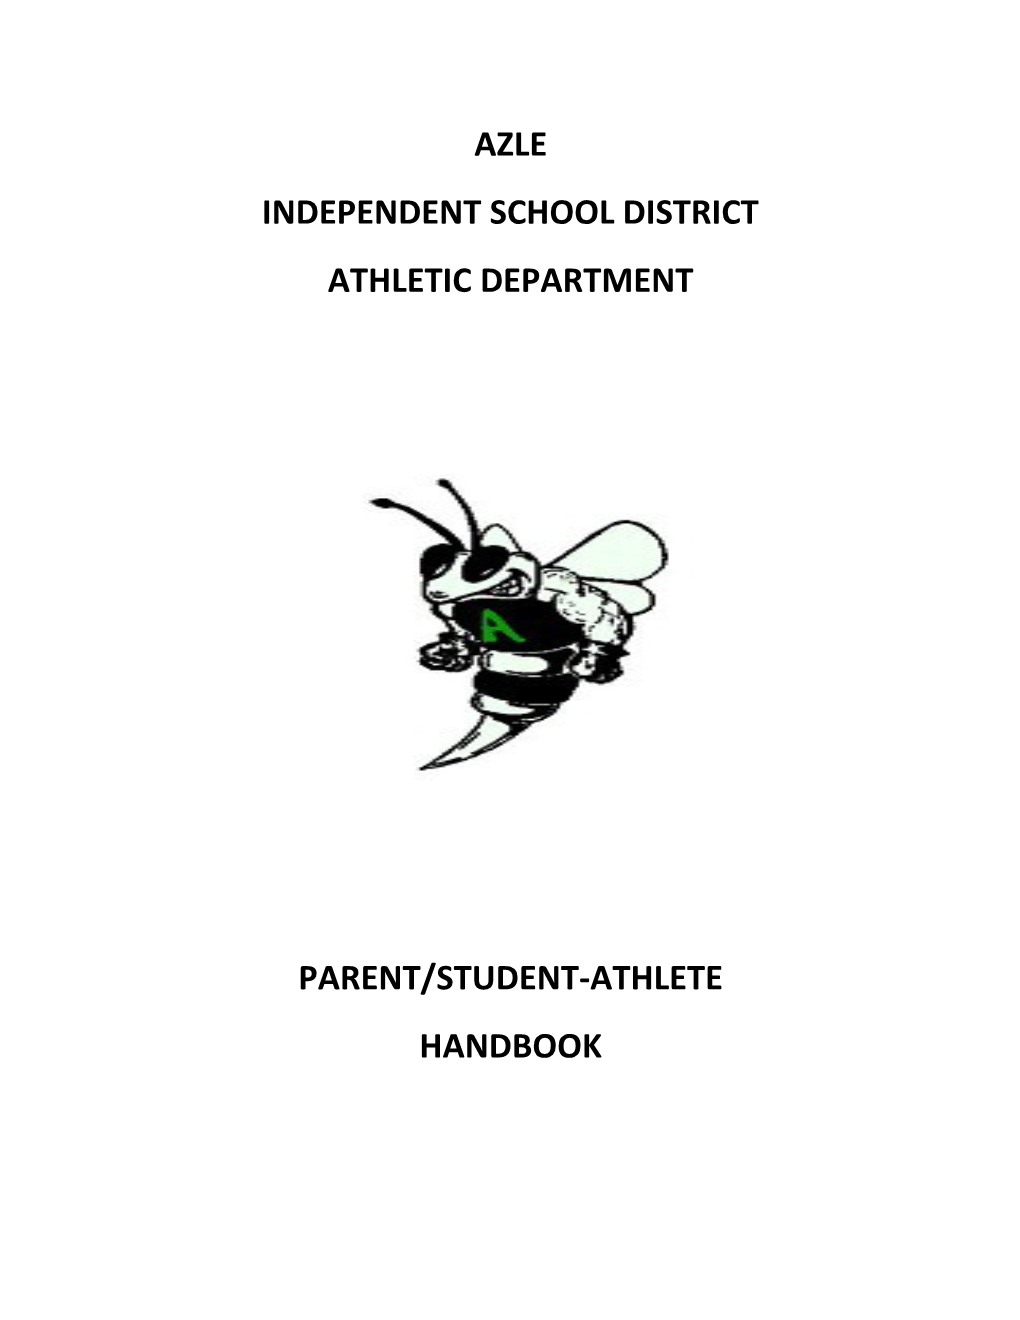 Independent School District s1